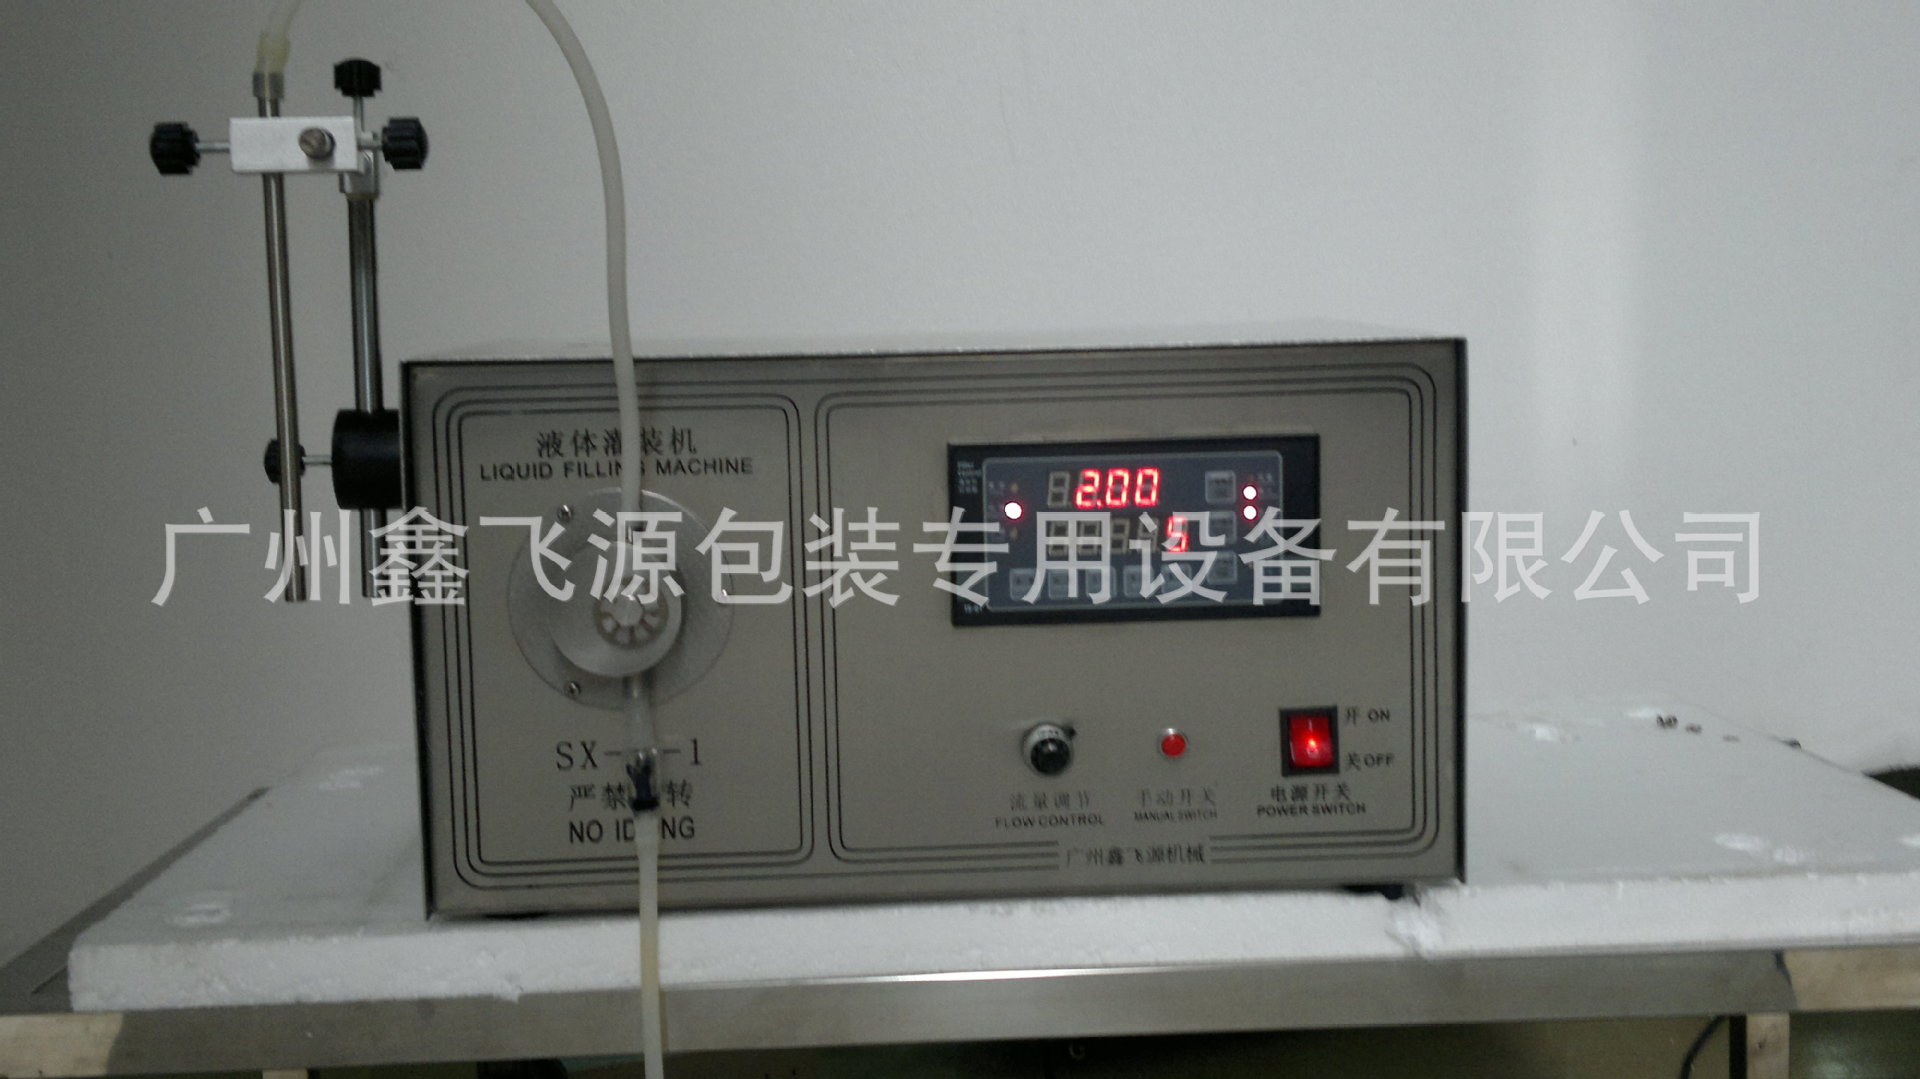 SX-1-1  半自動液體灌裝機 (1)